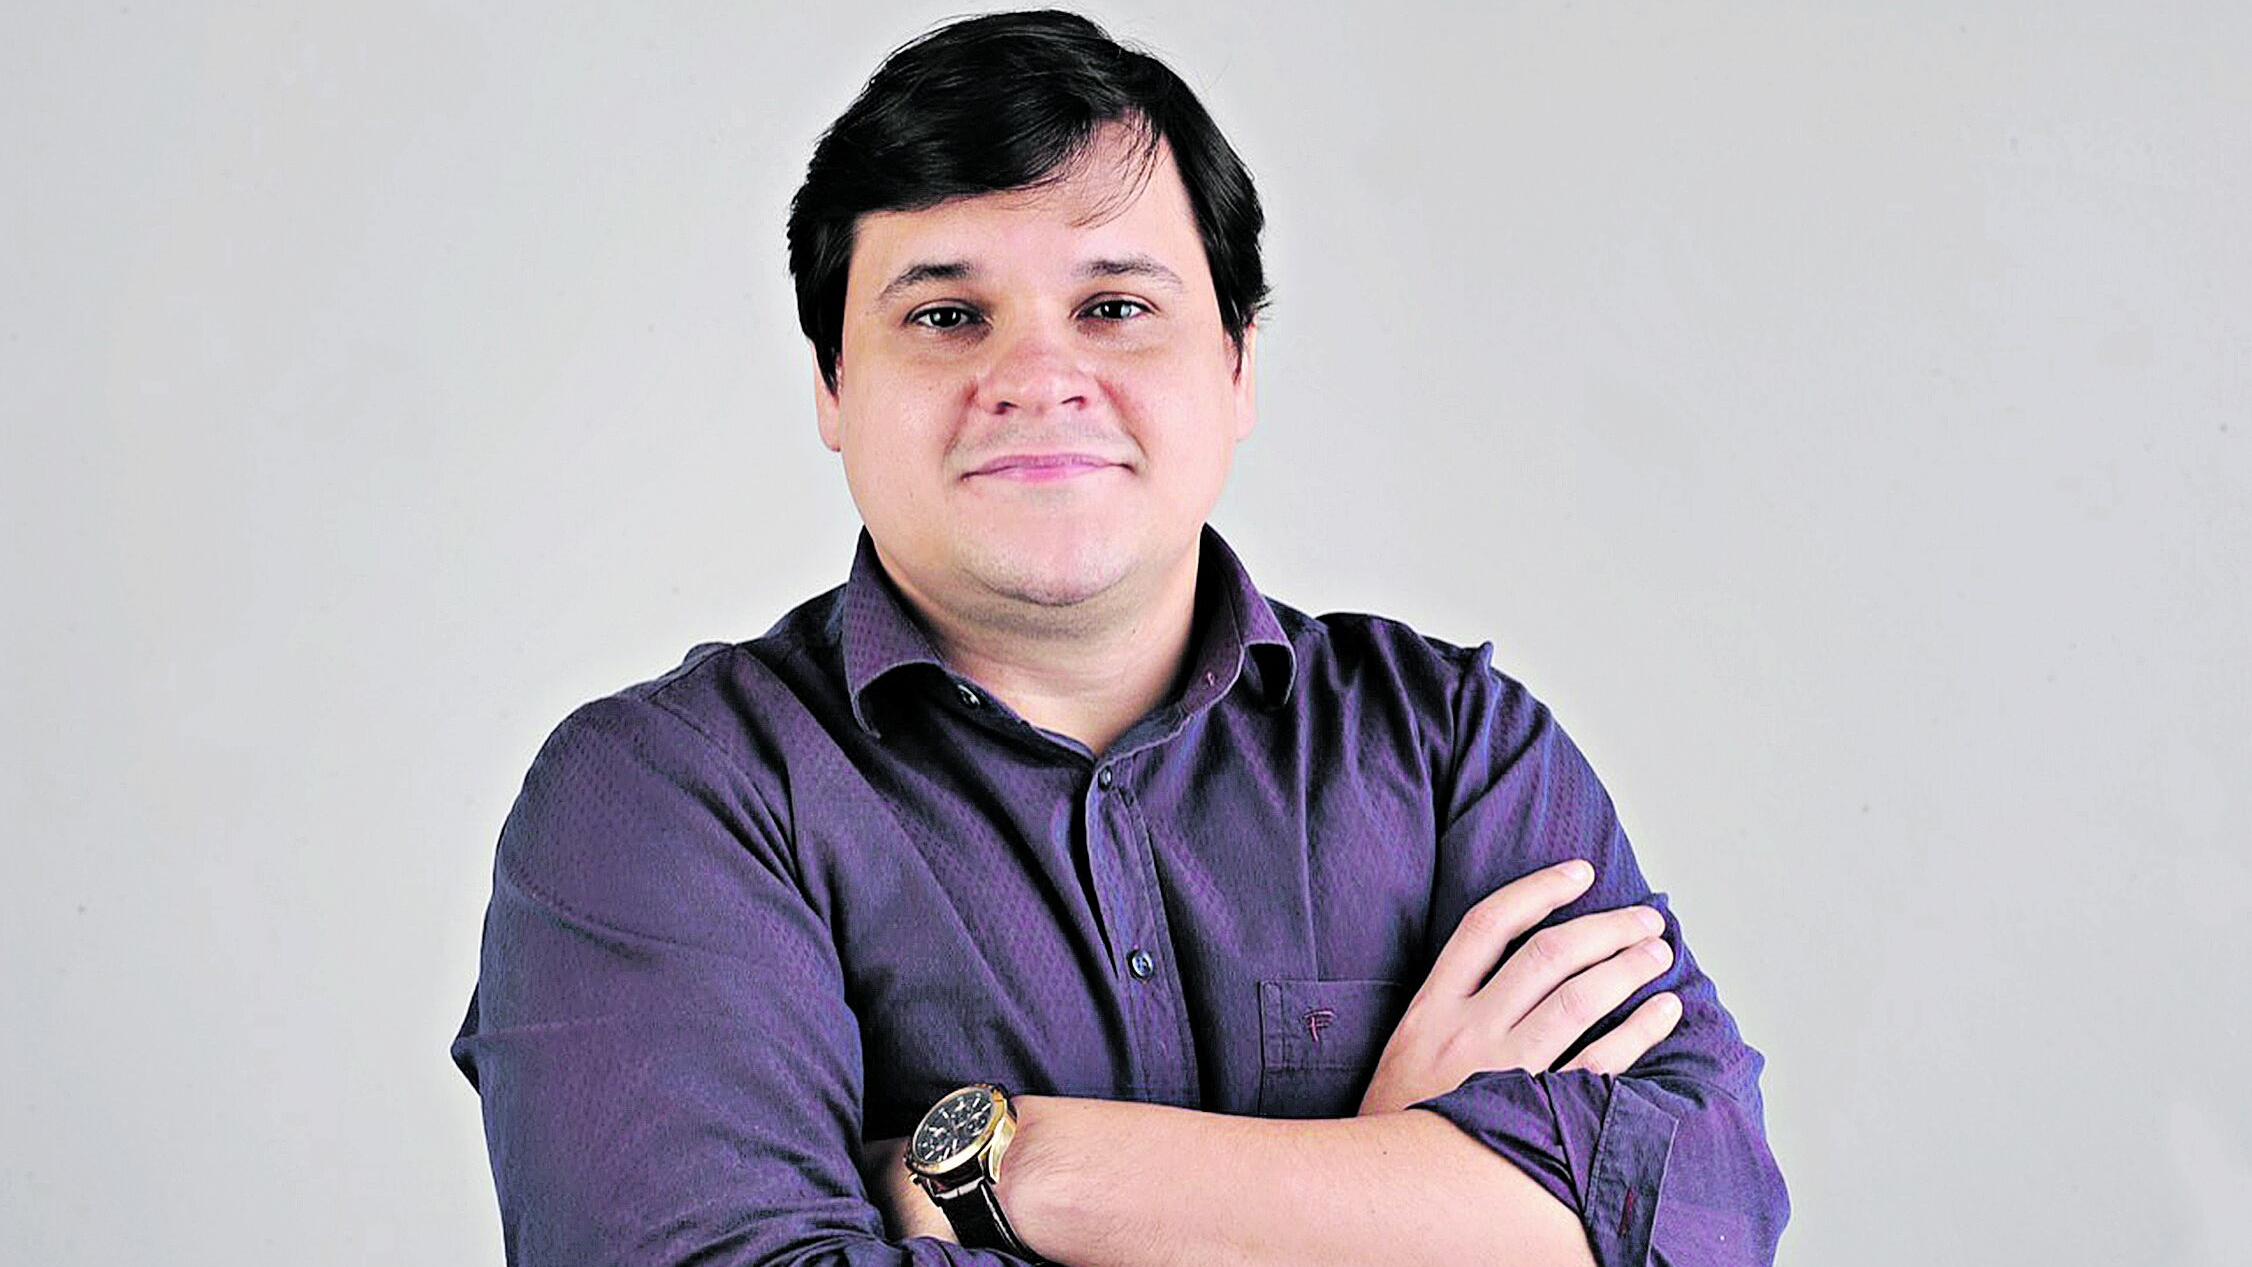 Diego Pereira dos Santos